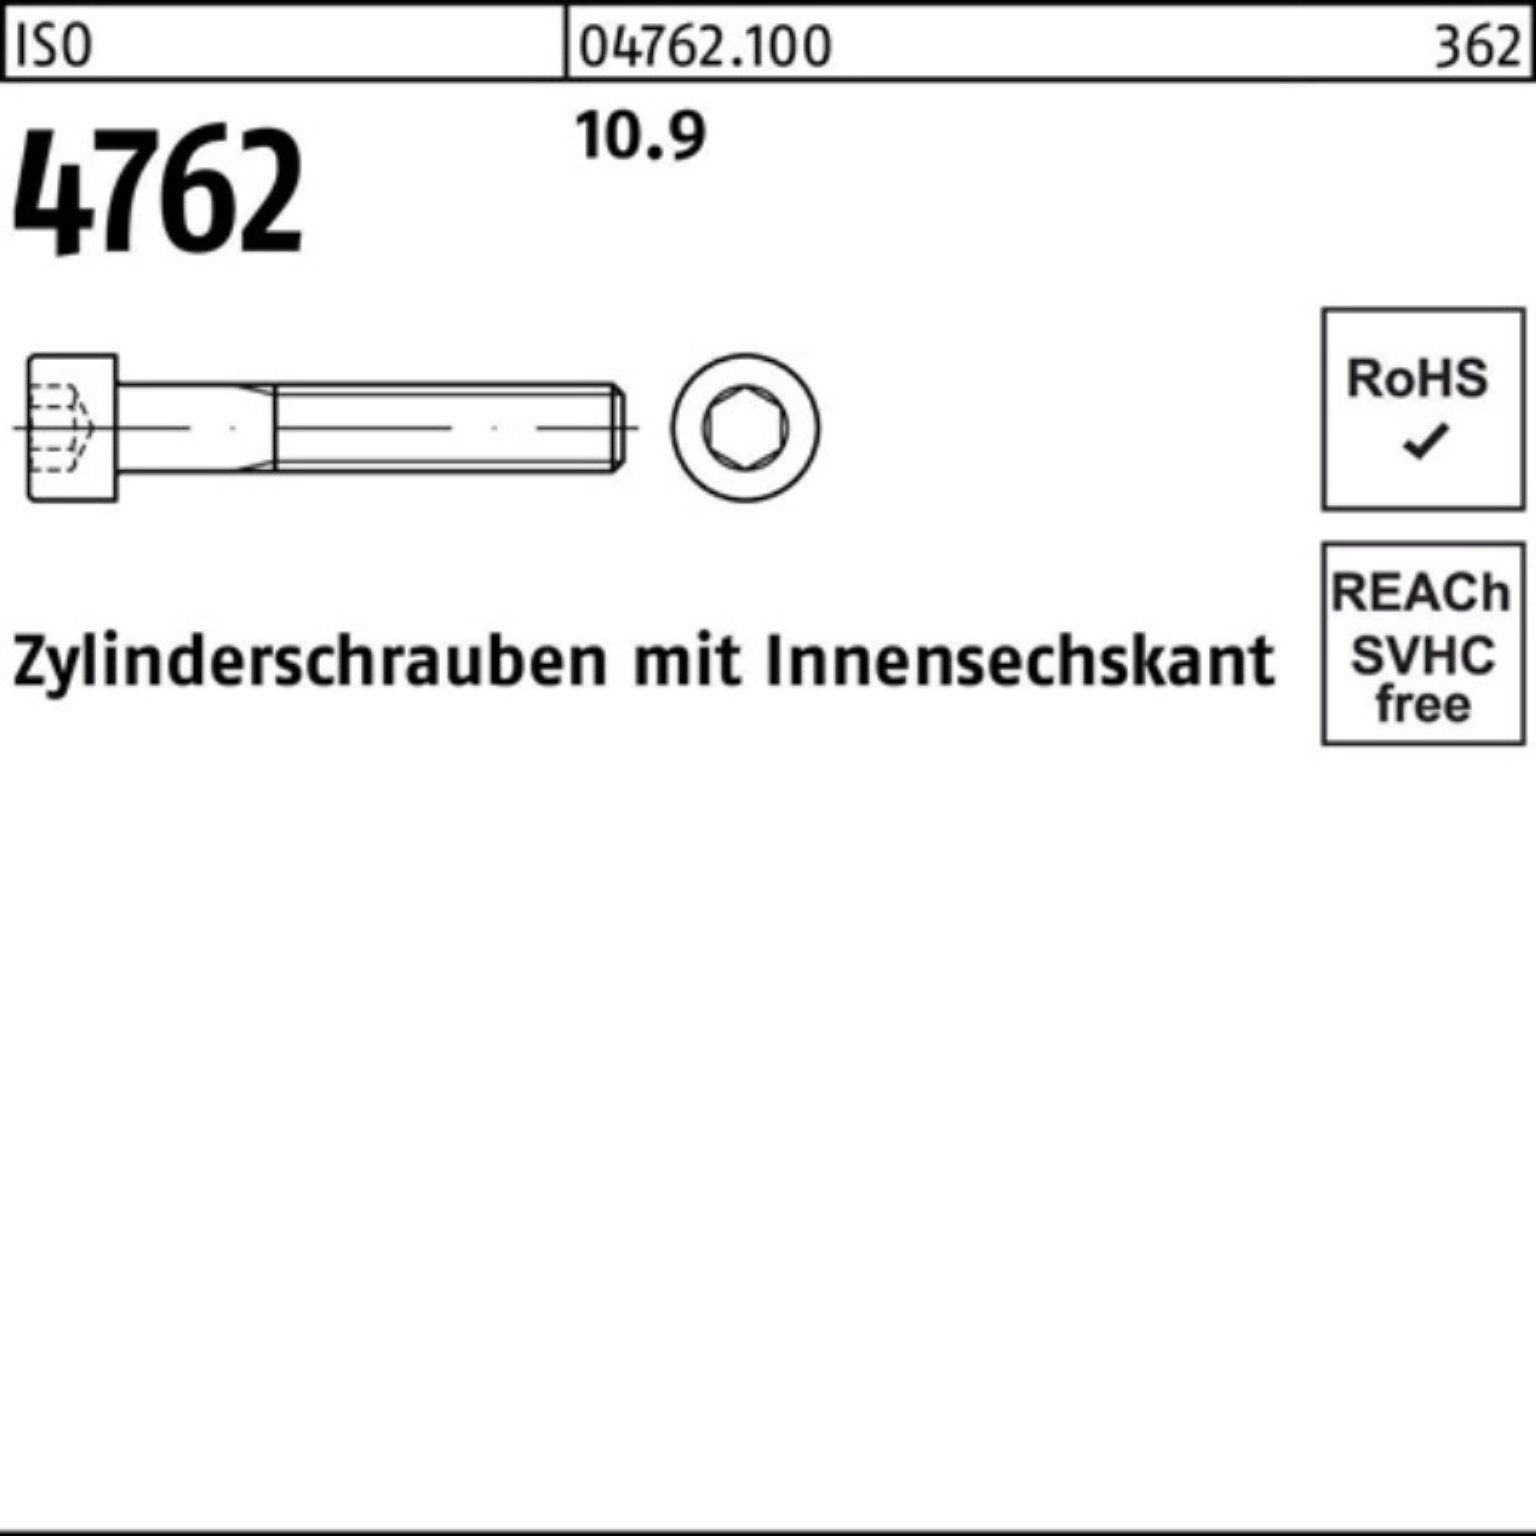 Pack Innen-6kt Reyher 100er 10.9 110 100 Zylinderschraube 4762 Zylinderschraube M6x Stück ISO